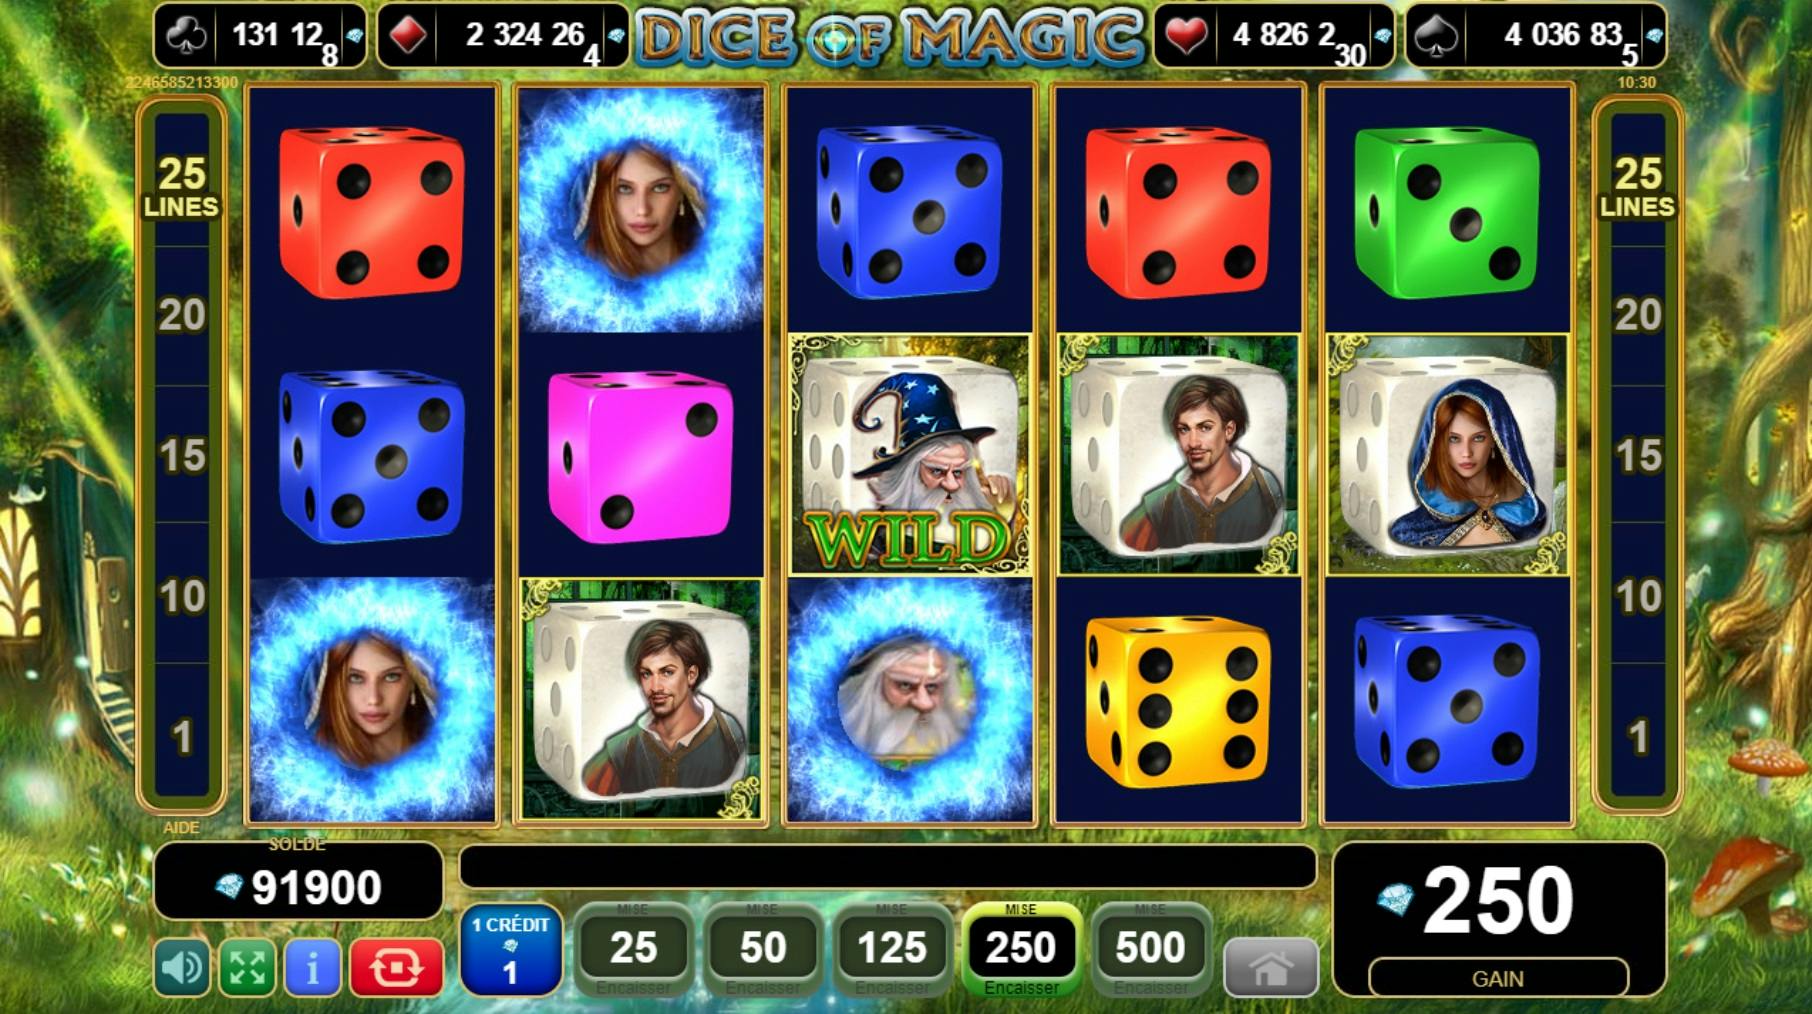 EGT Dice Of Magic amazing dice slot game